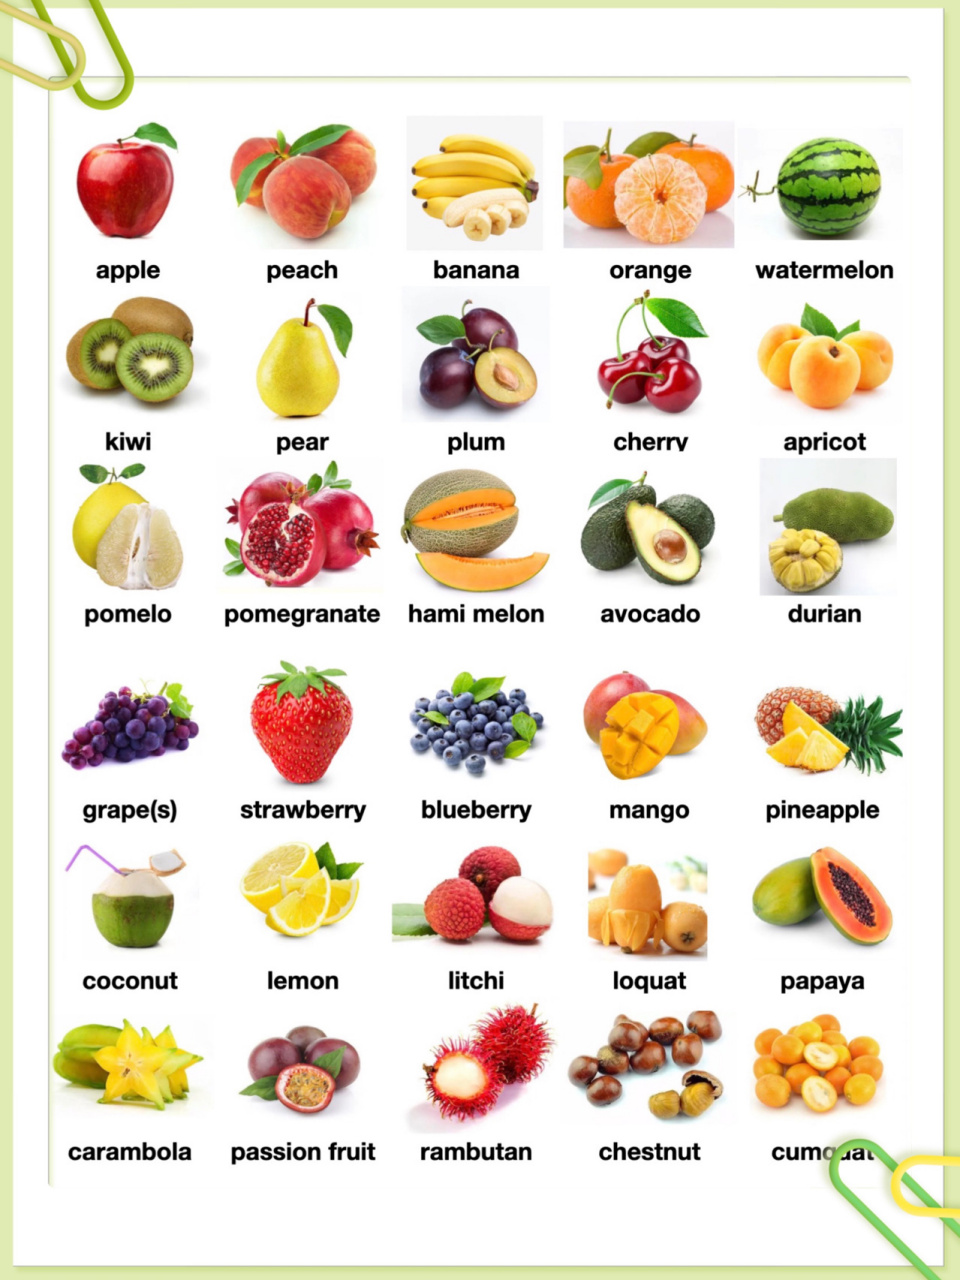 水果英语单词大全100个图片